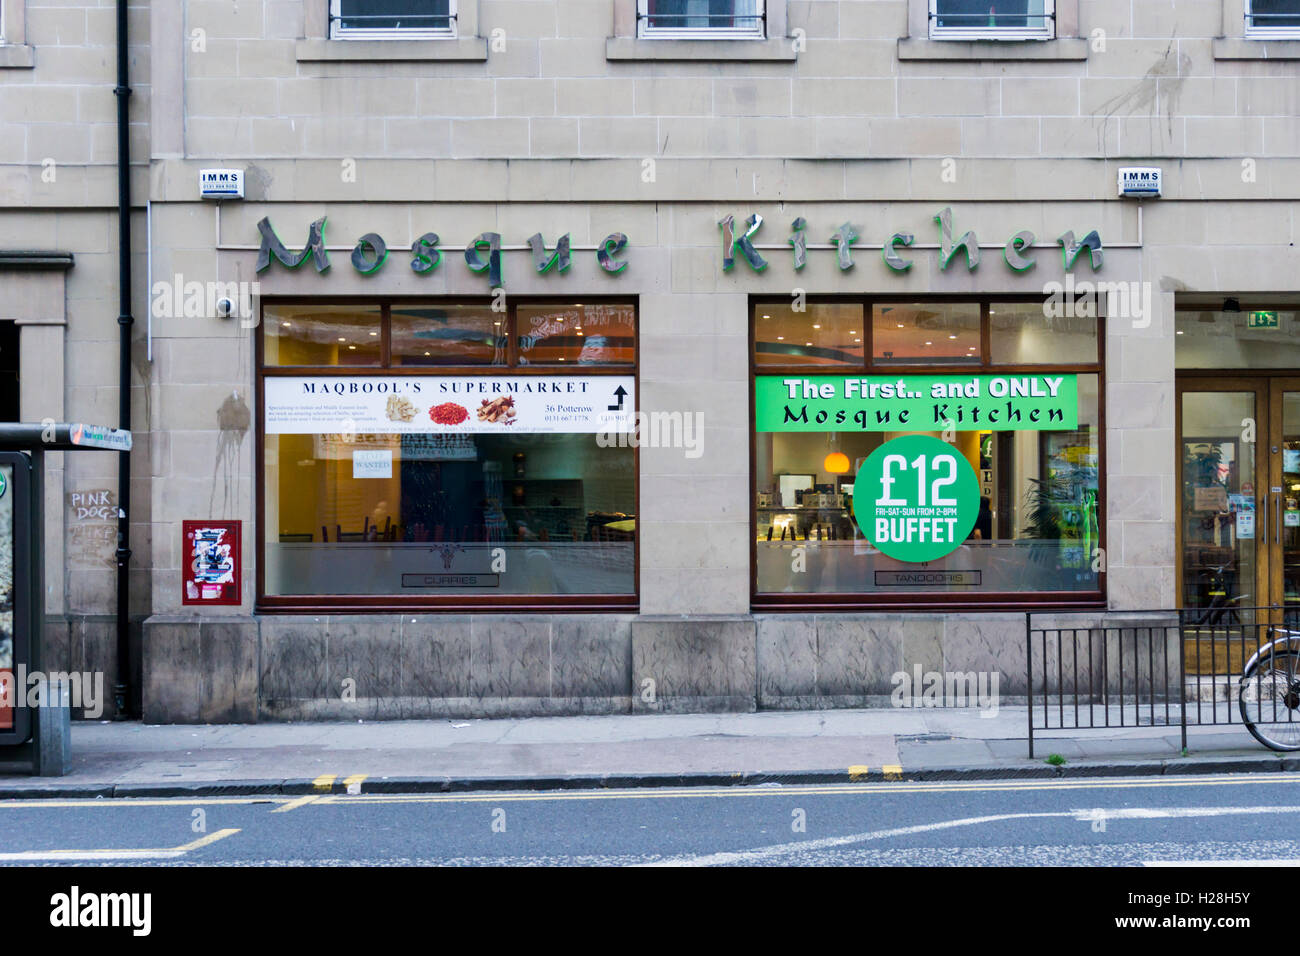 Mosque Kitchen Indian restaurant in Nicolson Street, Edinburgh. Stock Photo